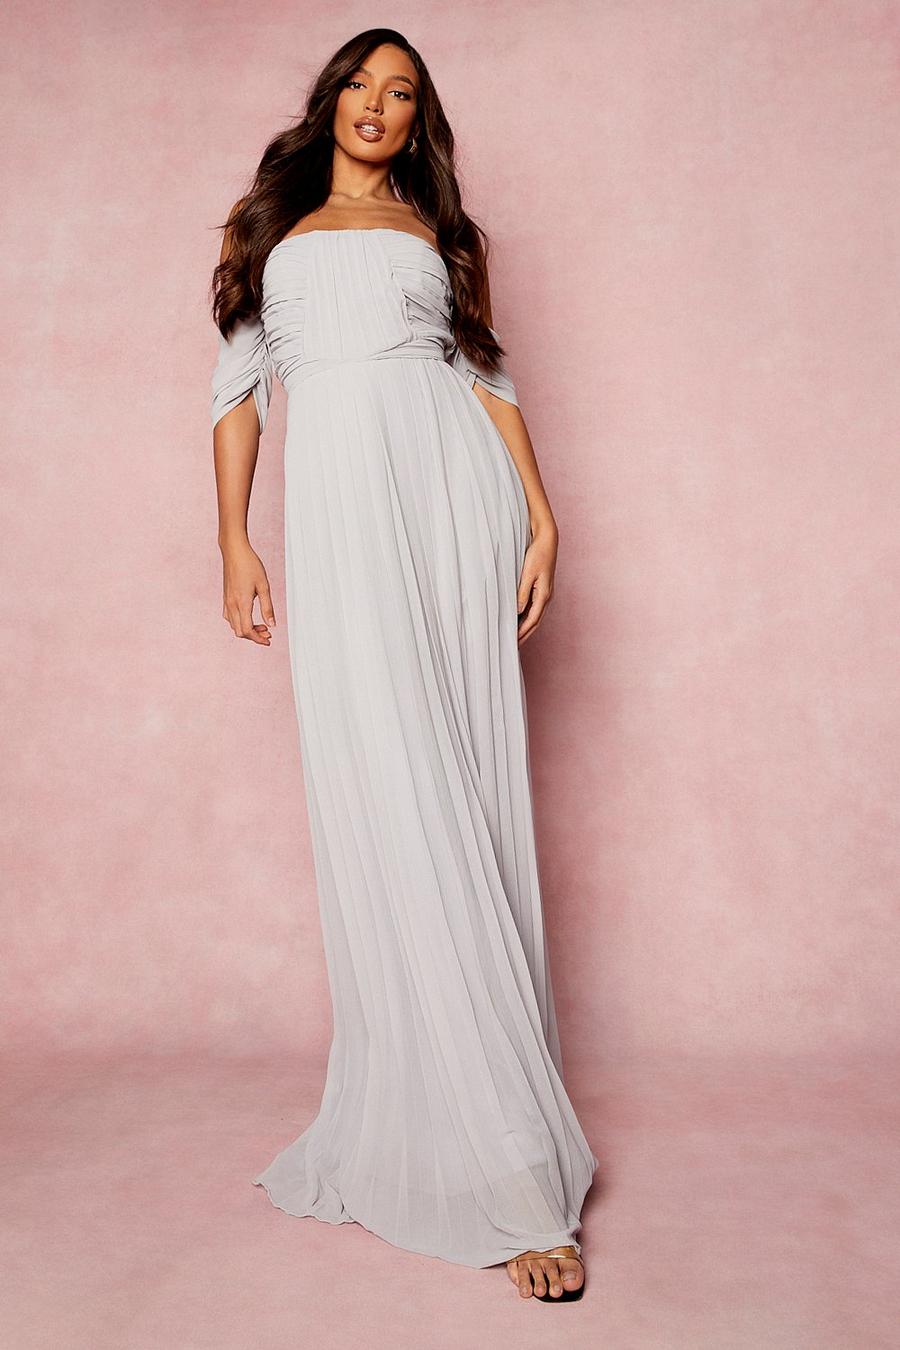 אפור שמלת שושבינה מקסי חשופת כתפיים עם קפלים, לנשים גבוהות image number 1